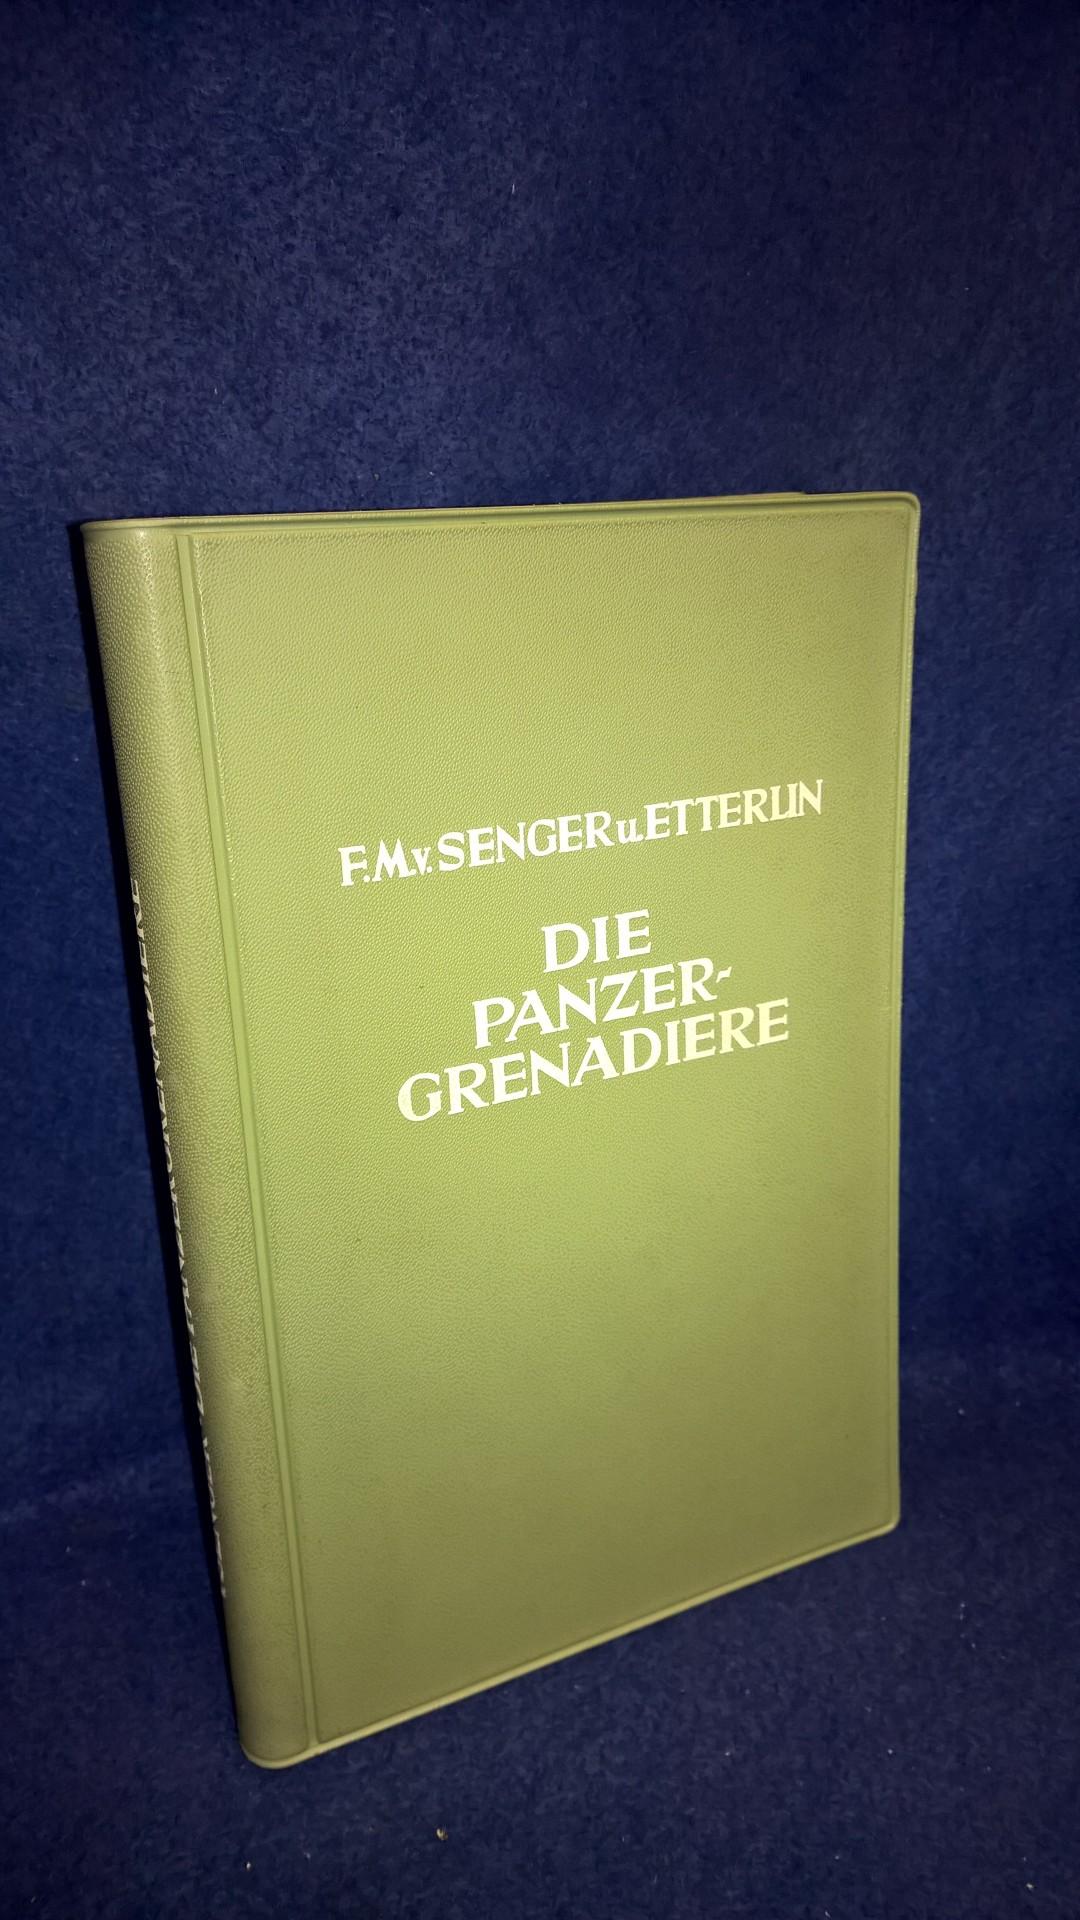 Die Panzergrenadiere. Geschichte und Gestalt der mechanisierten Infanterie 1930-1960.